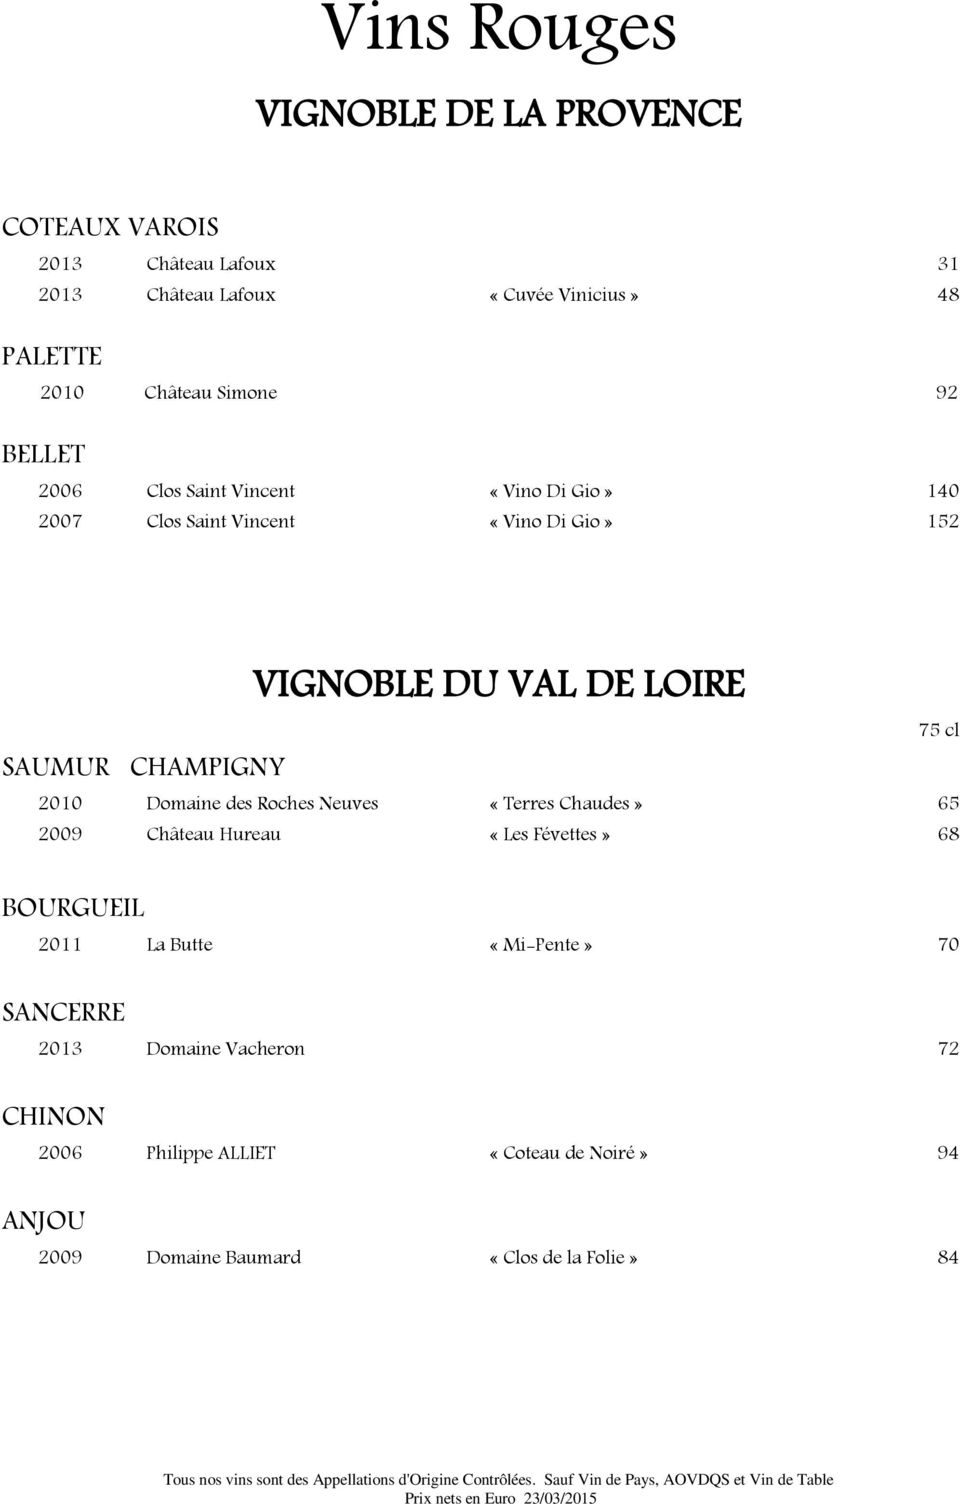 VIGNOBLE DU VAL DE LOIRE 2010 Domaine des Roches Neuves «Terres Chaudes» 65 2009 Château Hureau «Les Févettes» 68 BOURGUEIL 2011 La